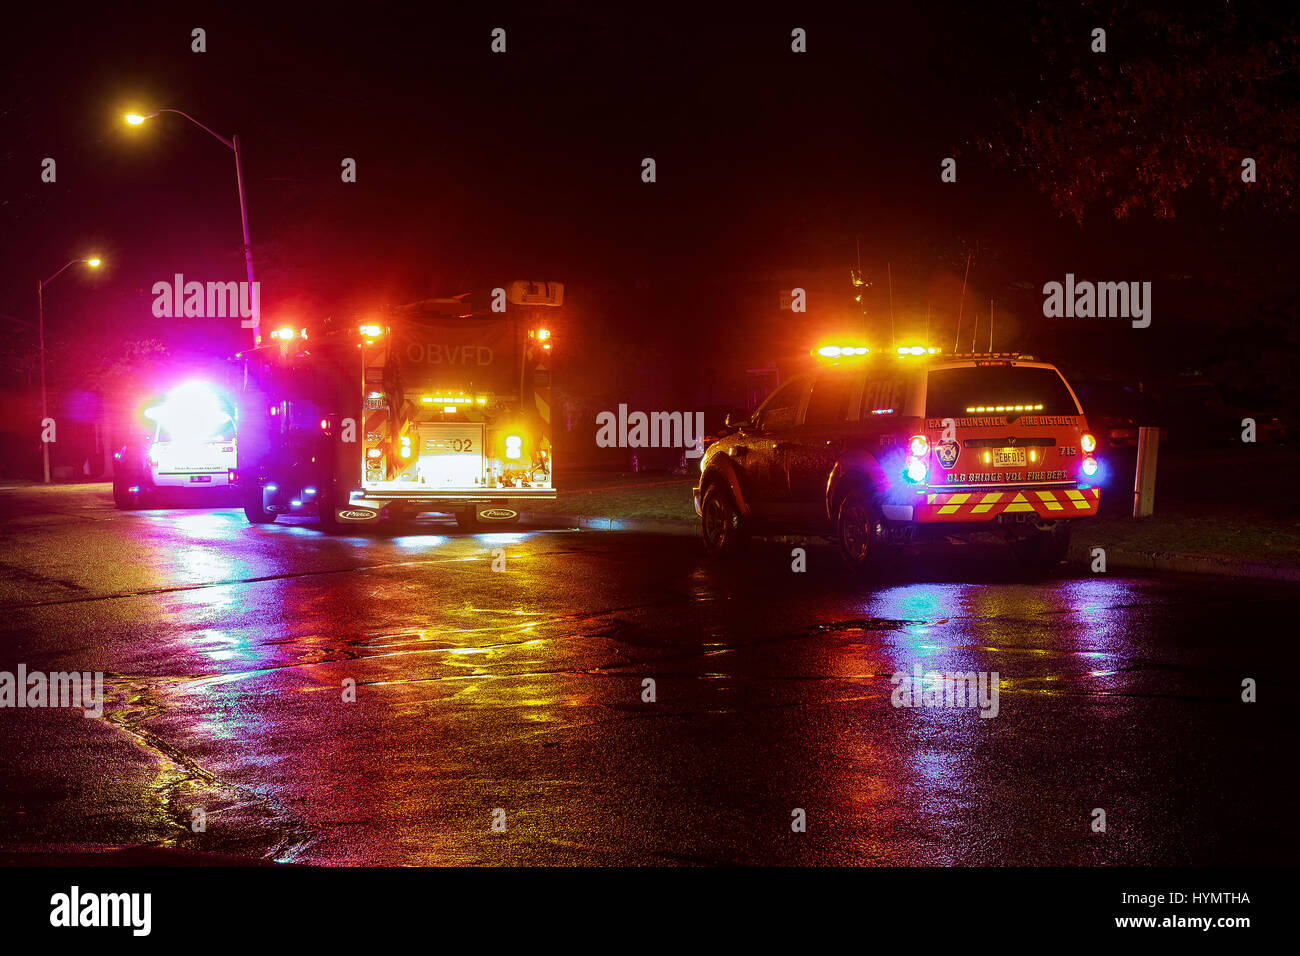 Sayreville, New Jersey, Usa - Apryl 01, 2017 Feuerwehrautos in der Nacht auf einen Anruf reagieren. Nacht-Feuerwehrauto Stockfoto